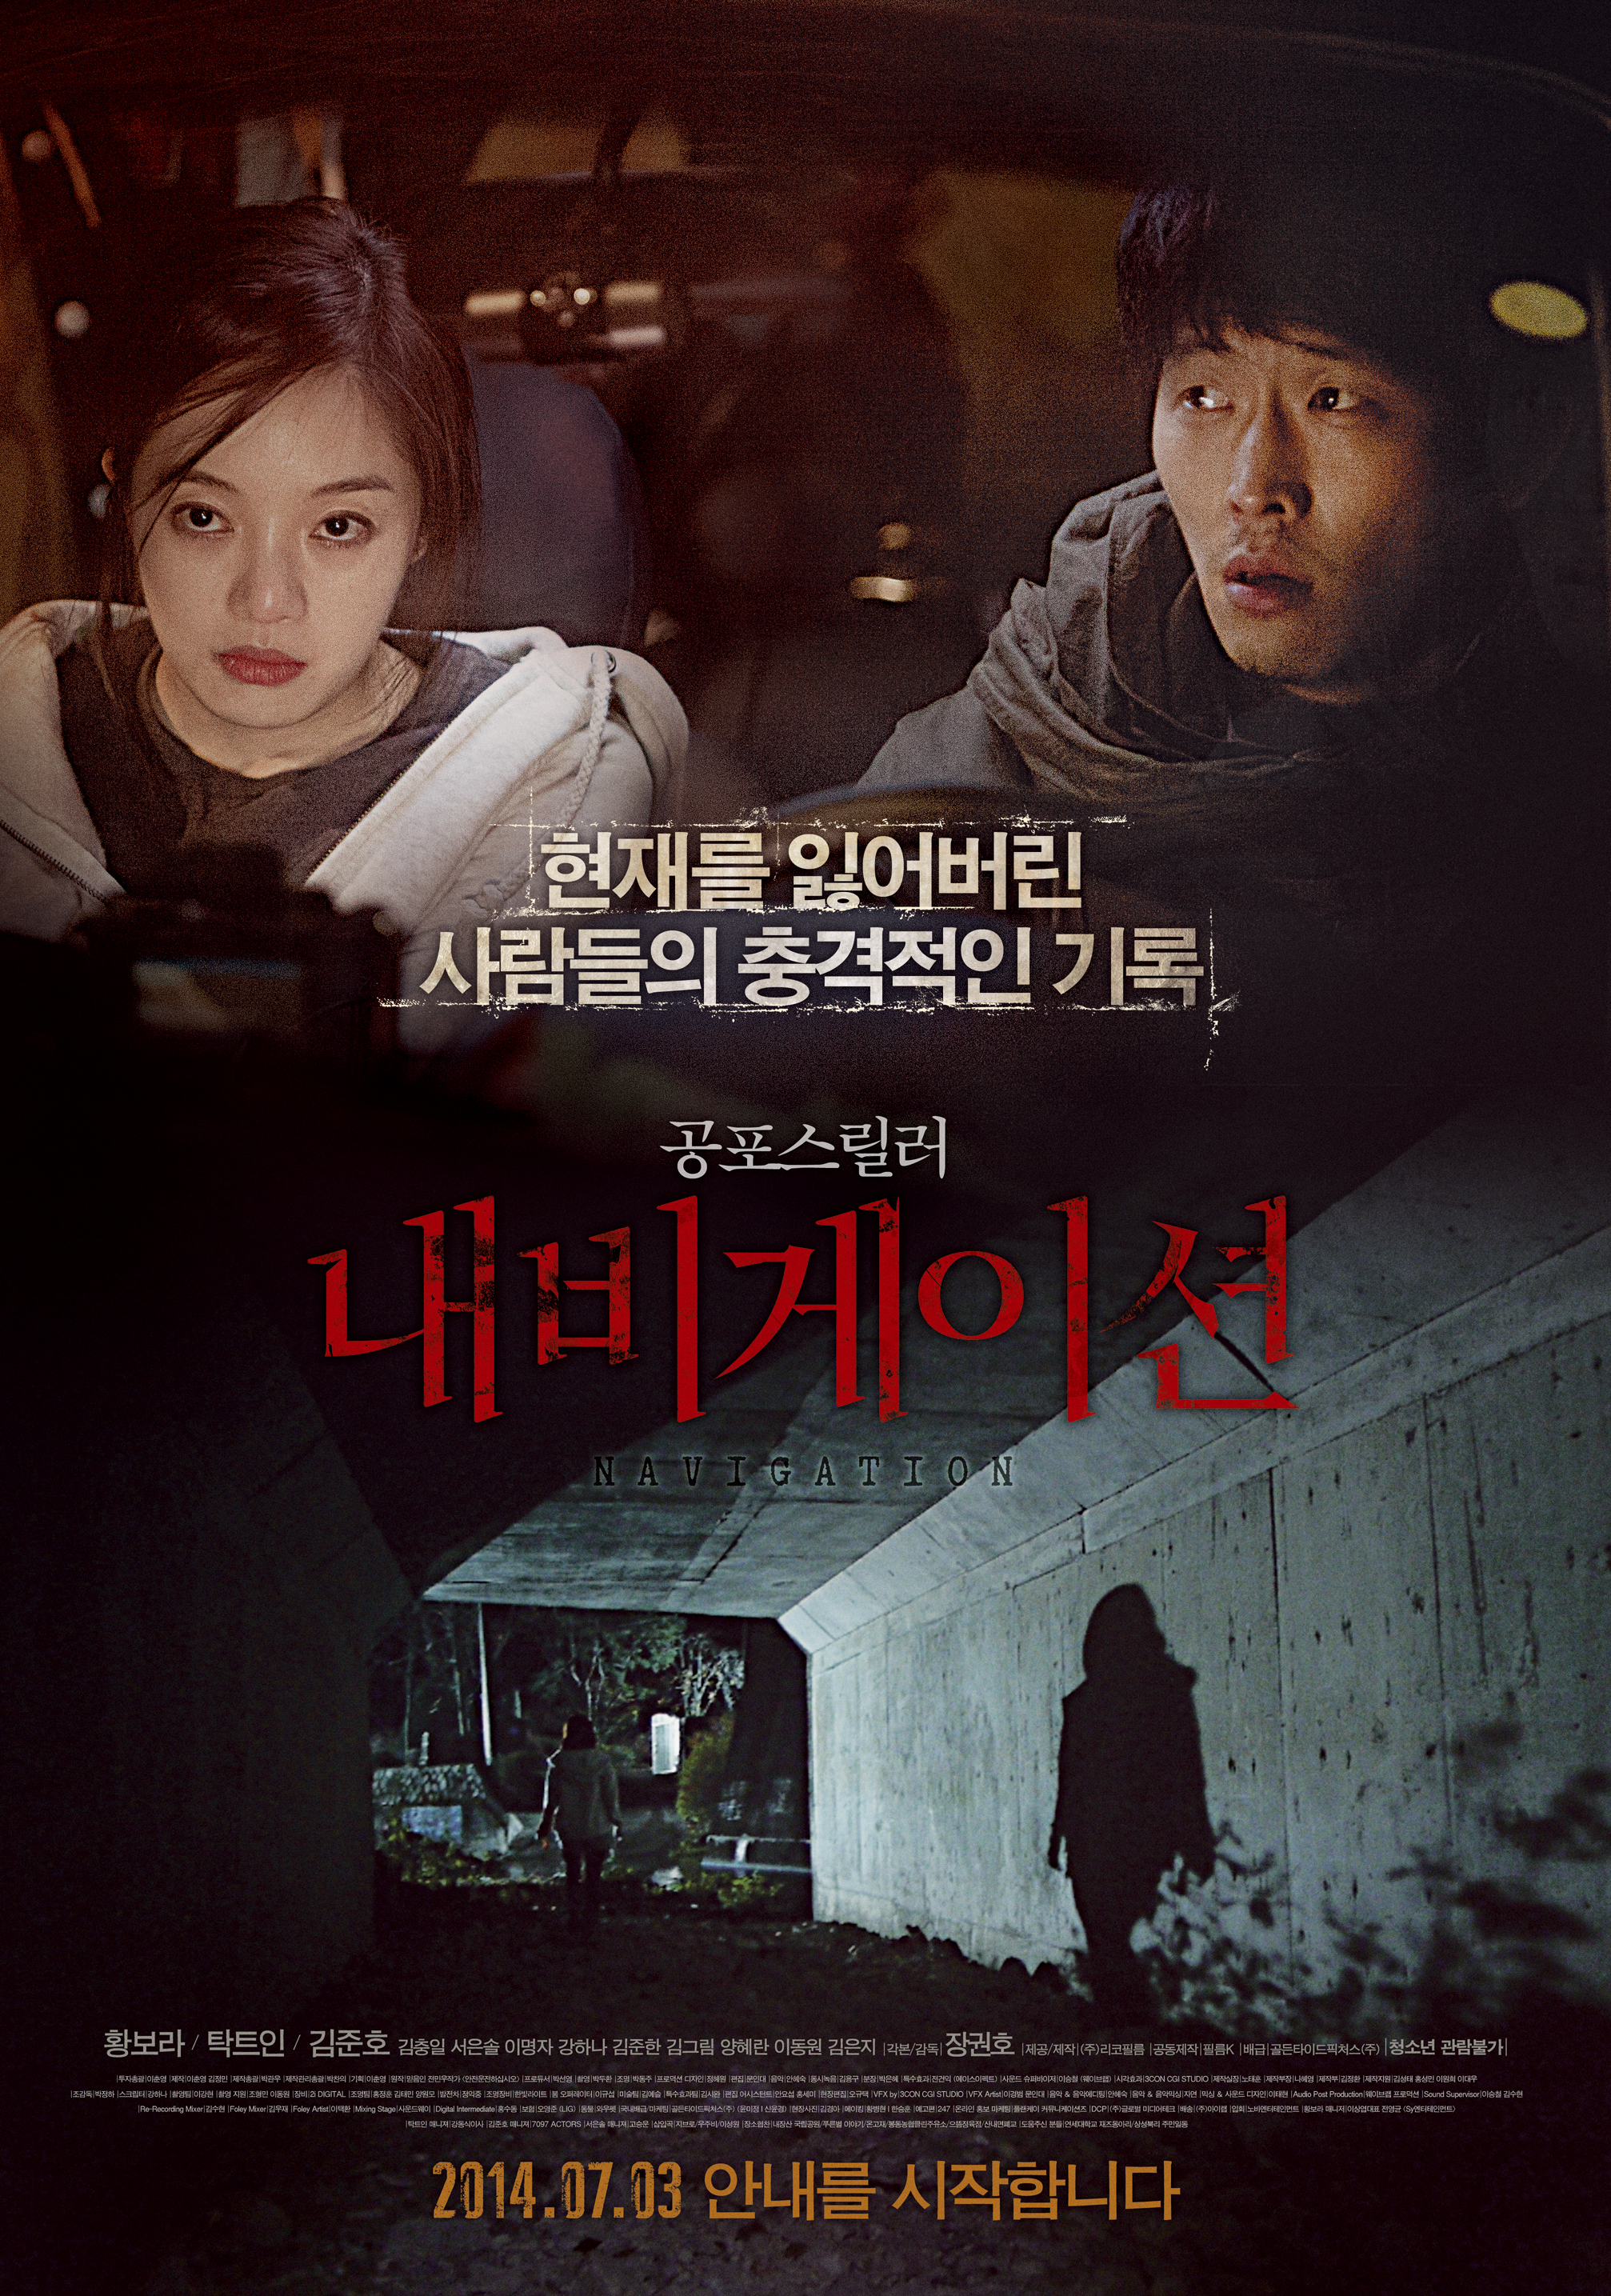 김준호가 영화 '내비게이션' 시가회에 불참했다. ⓒ '내비게이션' 포스터